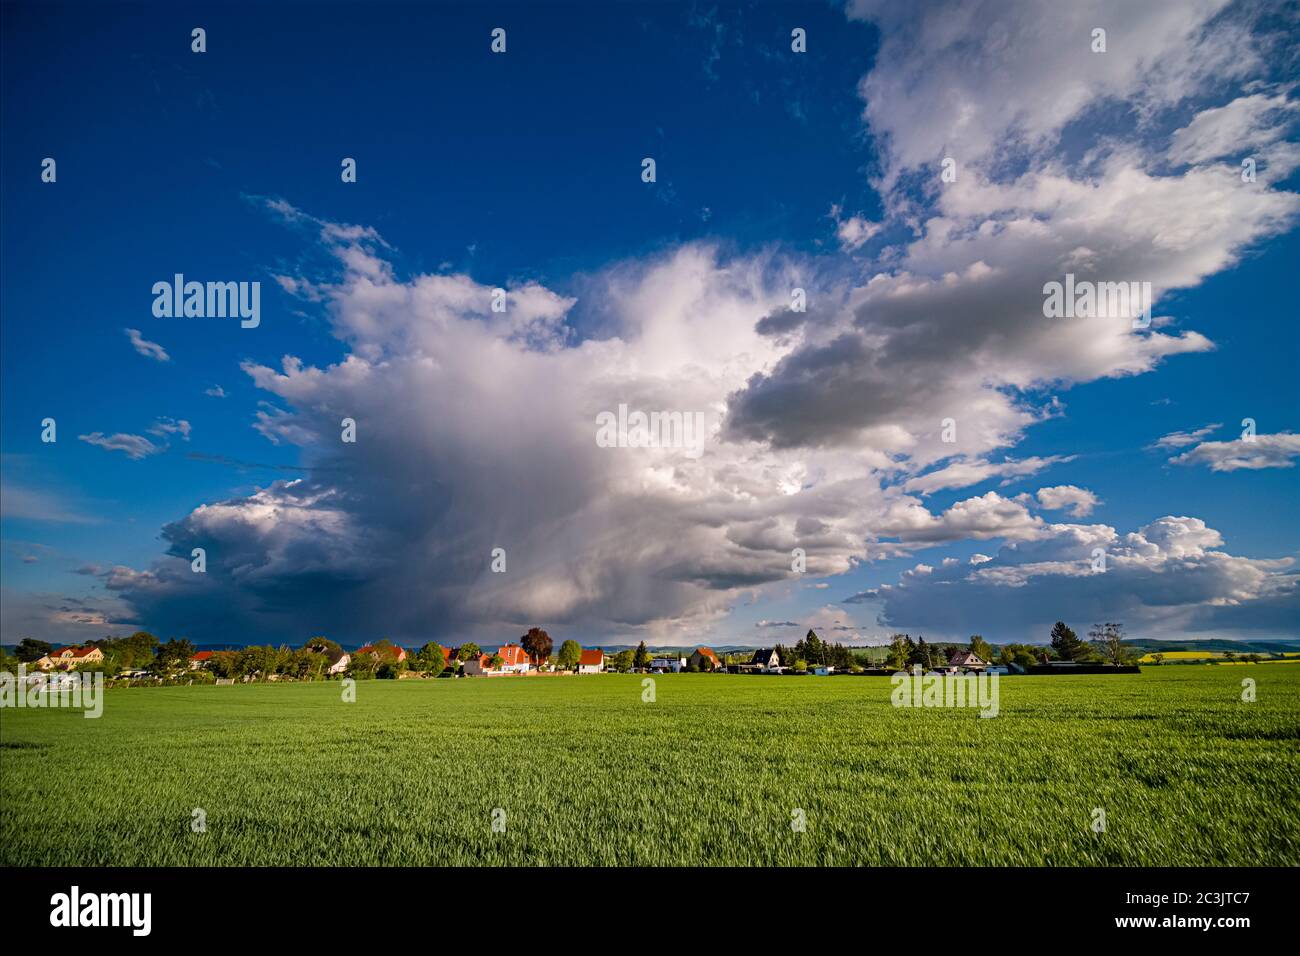 Paesaggio agricolo con un villaggio in lontananza, nubi oscure temporale in movimento Foto Stock